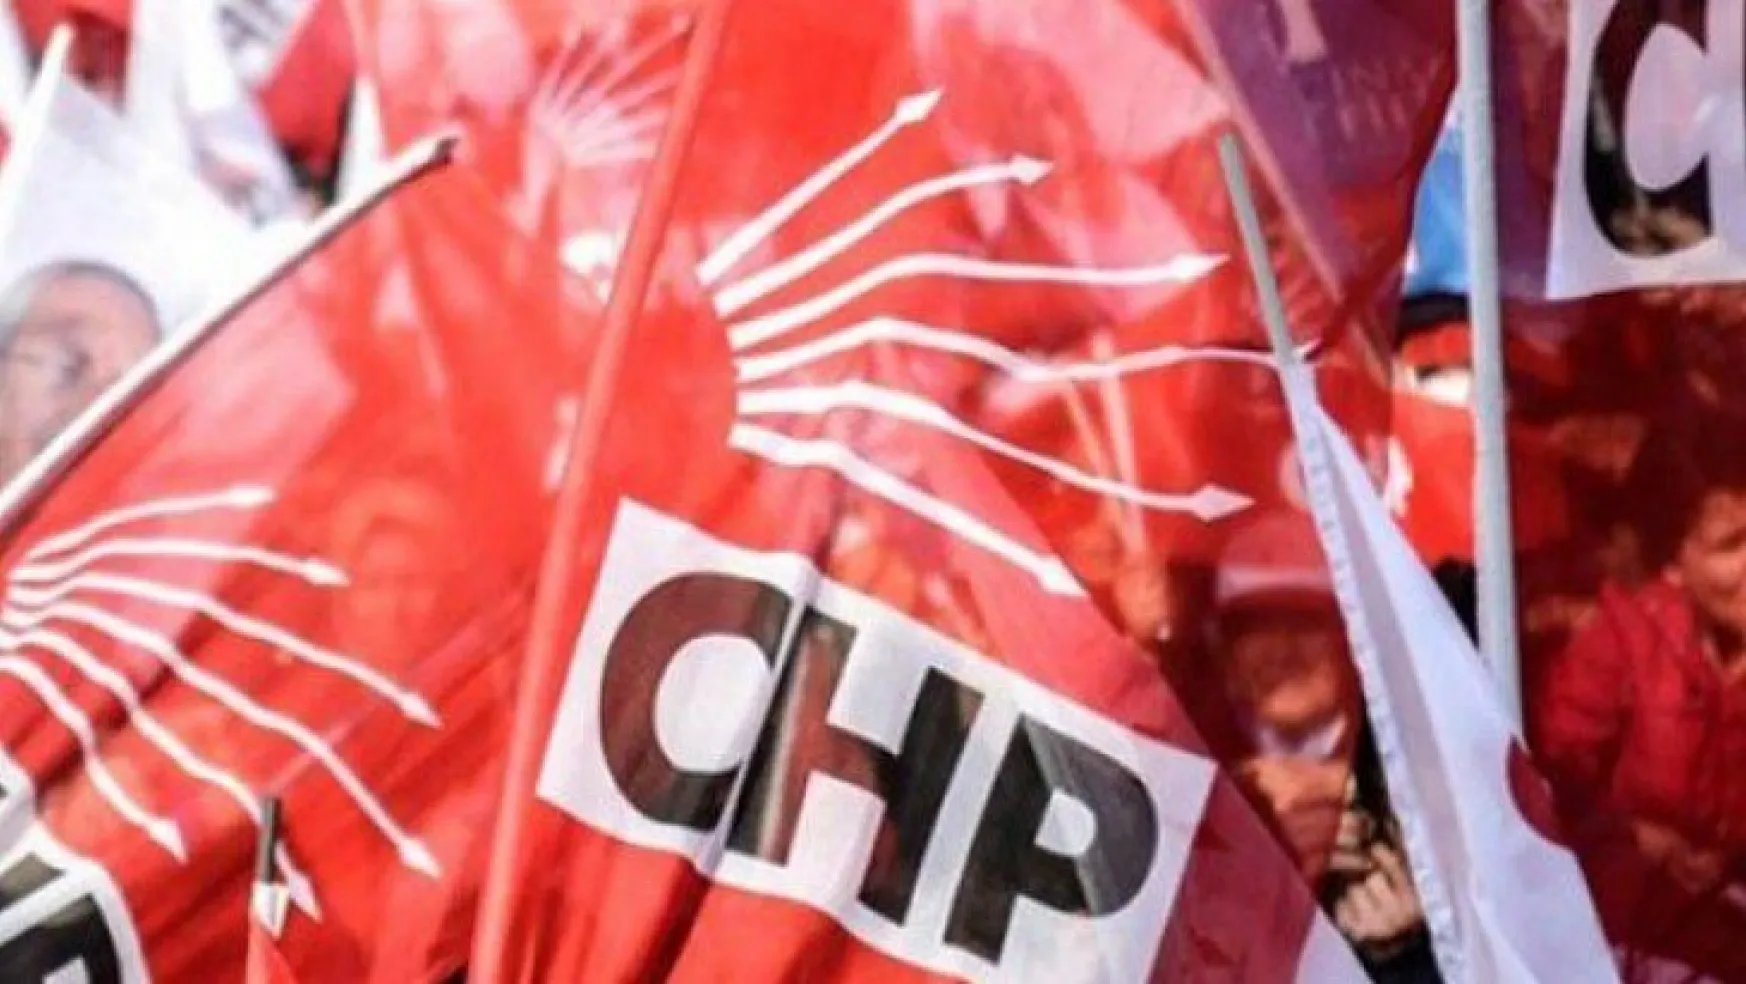 O isim CHP il başkanlığına adaylığını açıkladı